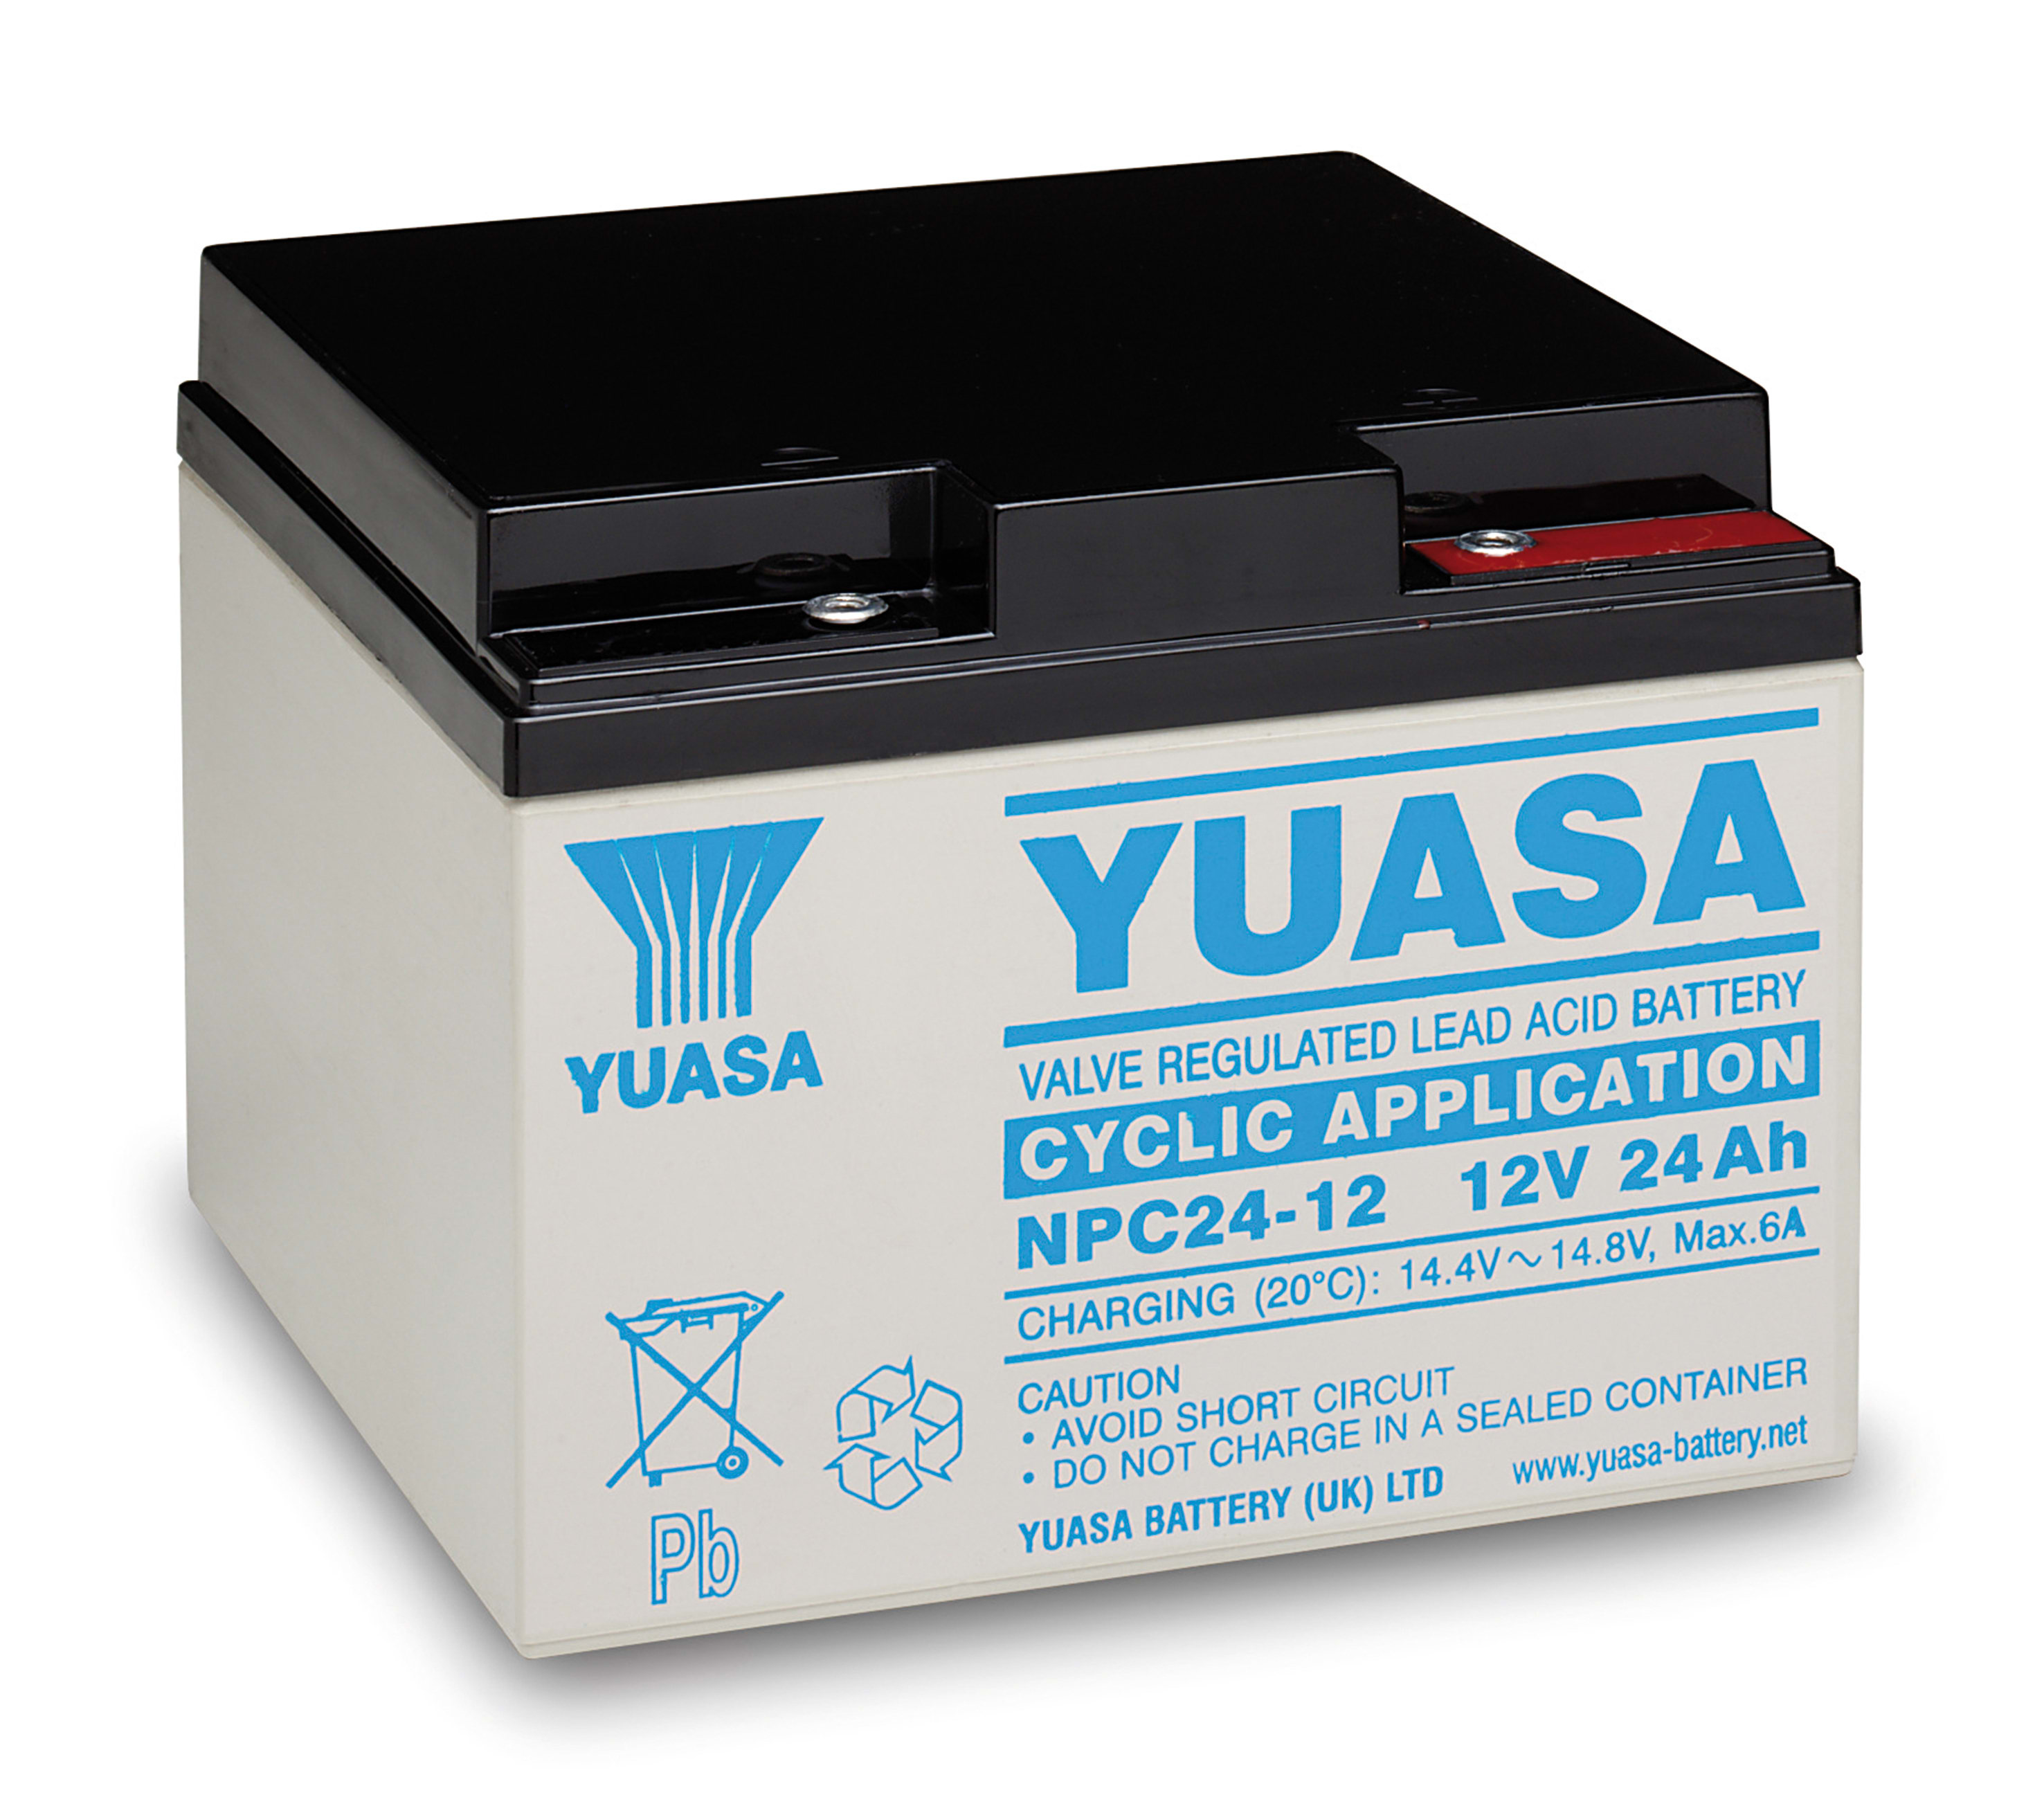 Аккумулятор для электромобиля 12v. Аккумуляторная батарея Yuasa np24-12i. Аккумуляторы Yuasa swl1100 -40a. Прозрачные АКБ.